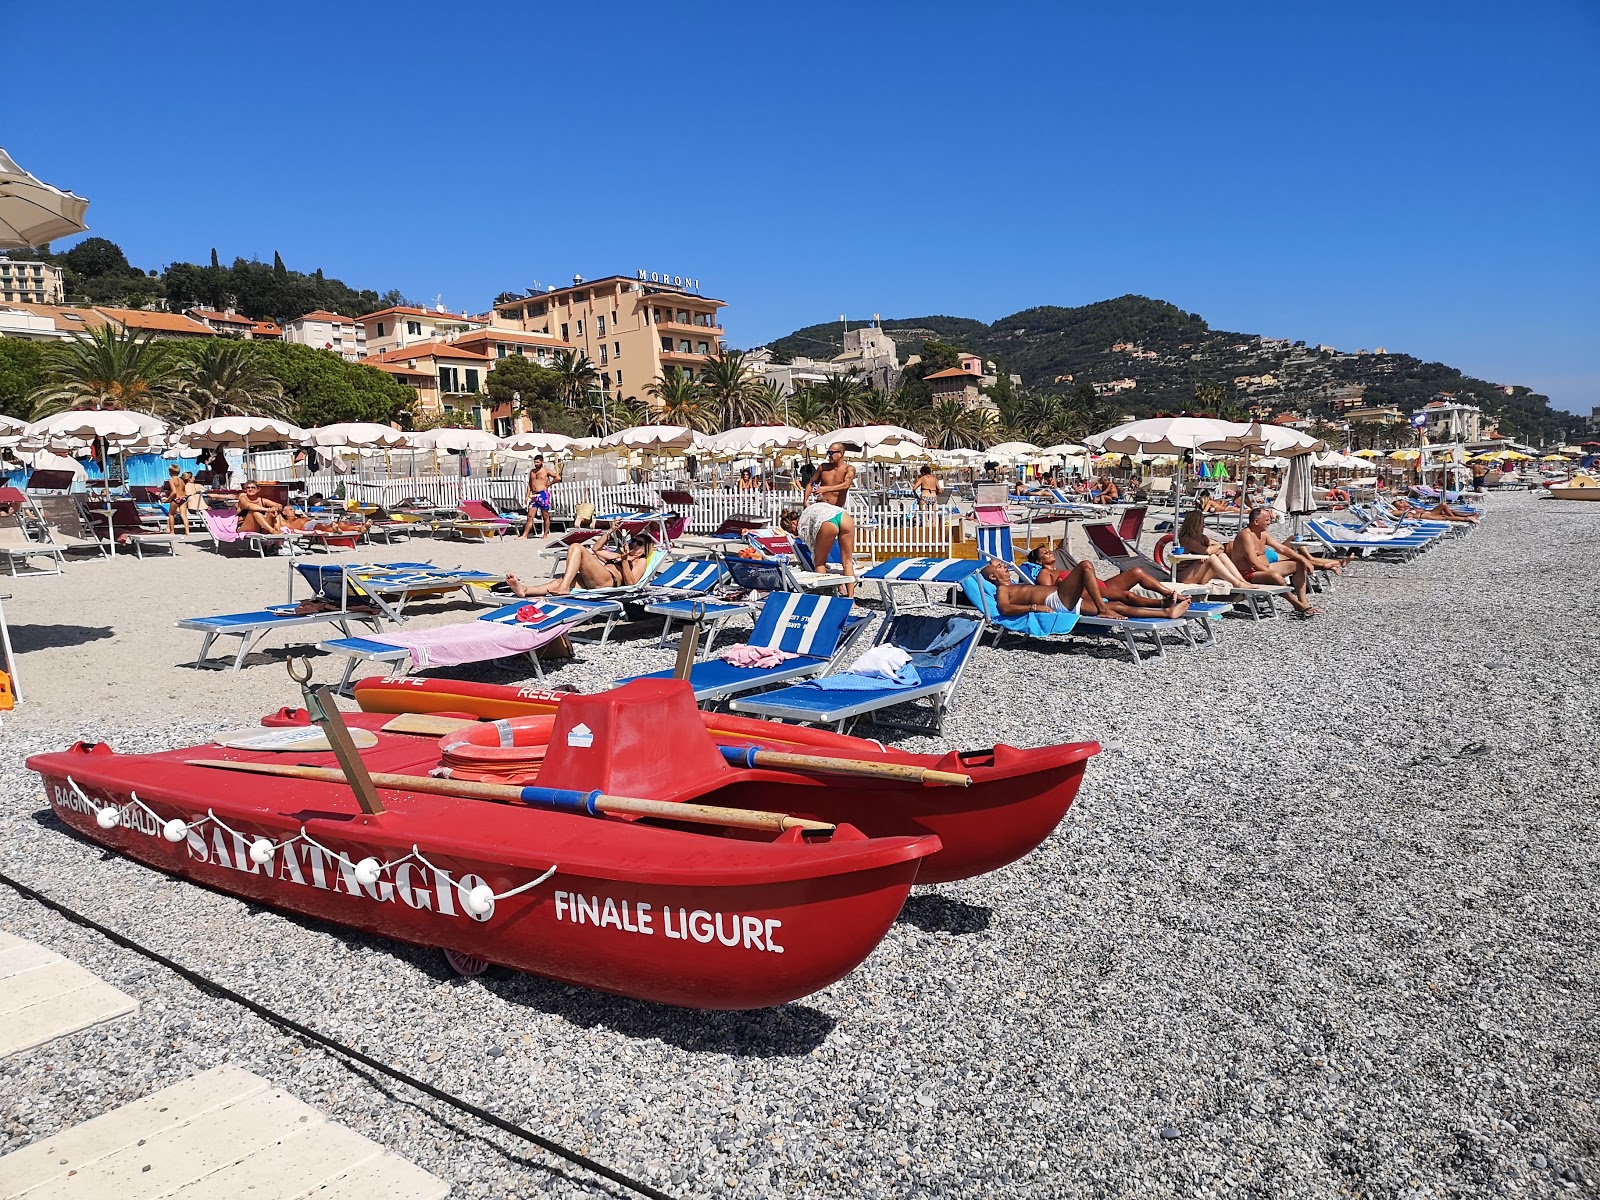 Foto af Spiaggia libera Attrezzata med høj niveau af renlighed